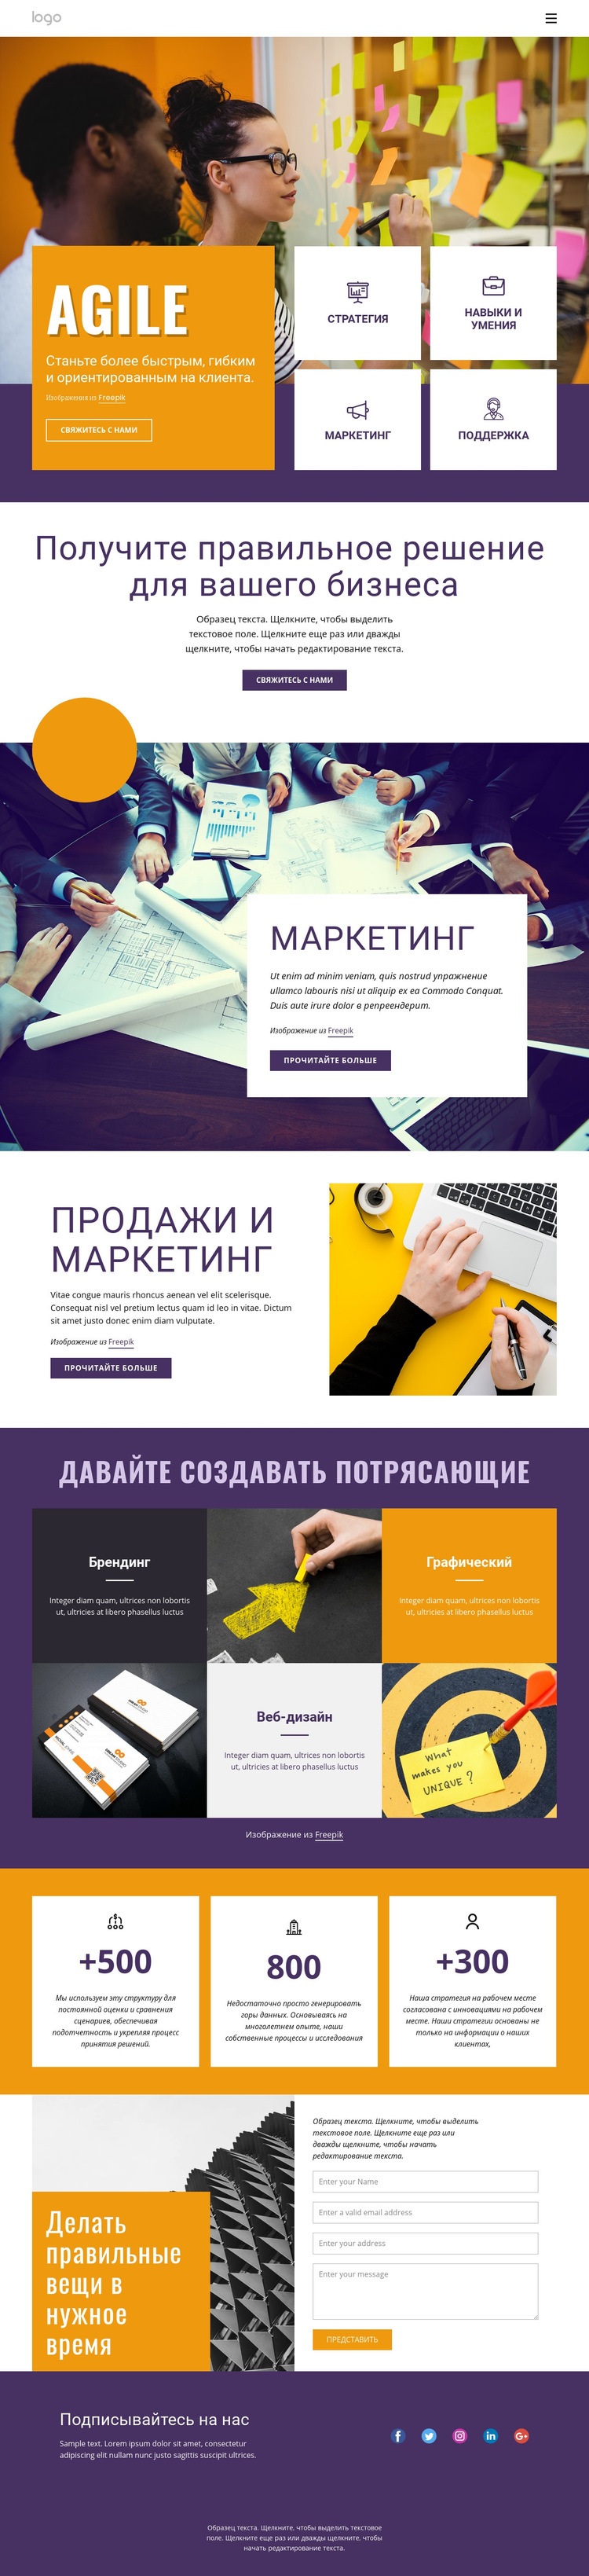 ИТ бизнес услуги Дизайн сайта